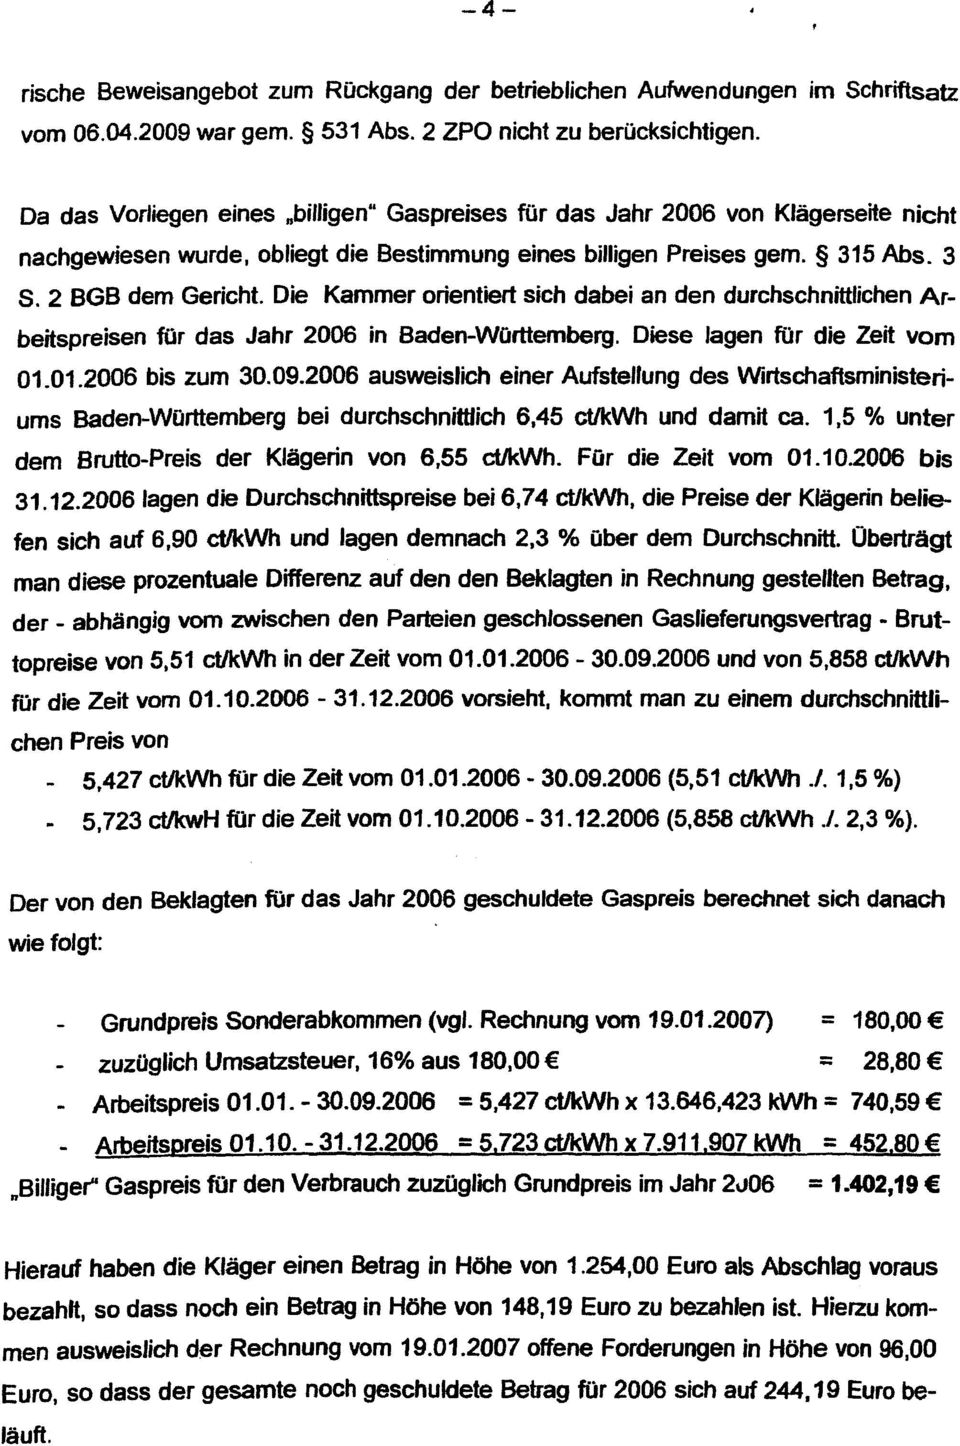 Die Kammer orientiert sich dabei an den durchschnittlichen Arbeitspreisen tor das Jahr 2006 in Baden-WOrttemberg. Diese lagen für die Zeit vom 01.01.2006 bis zum 30.09.